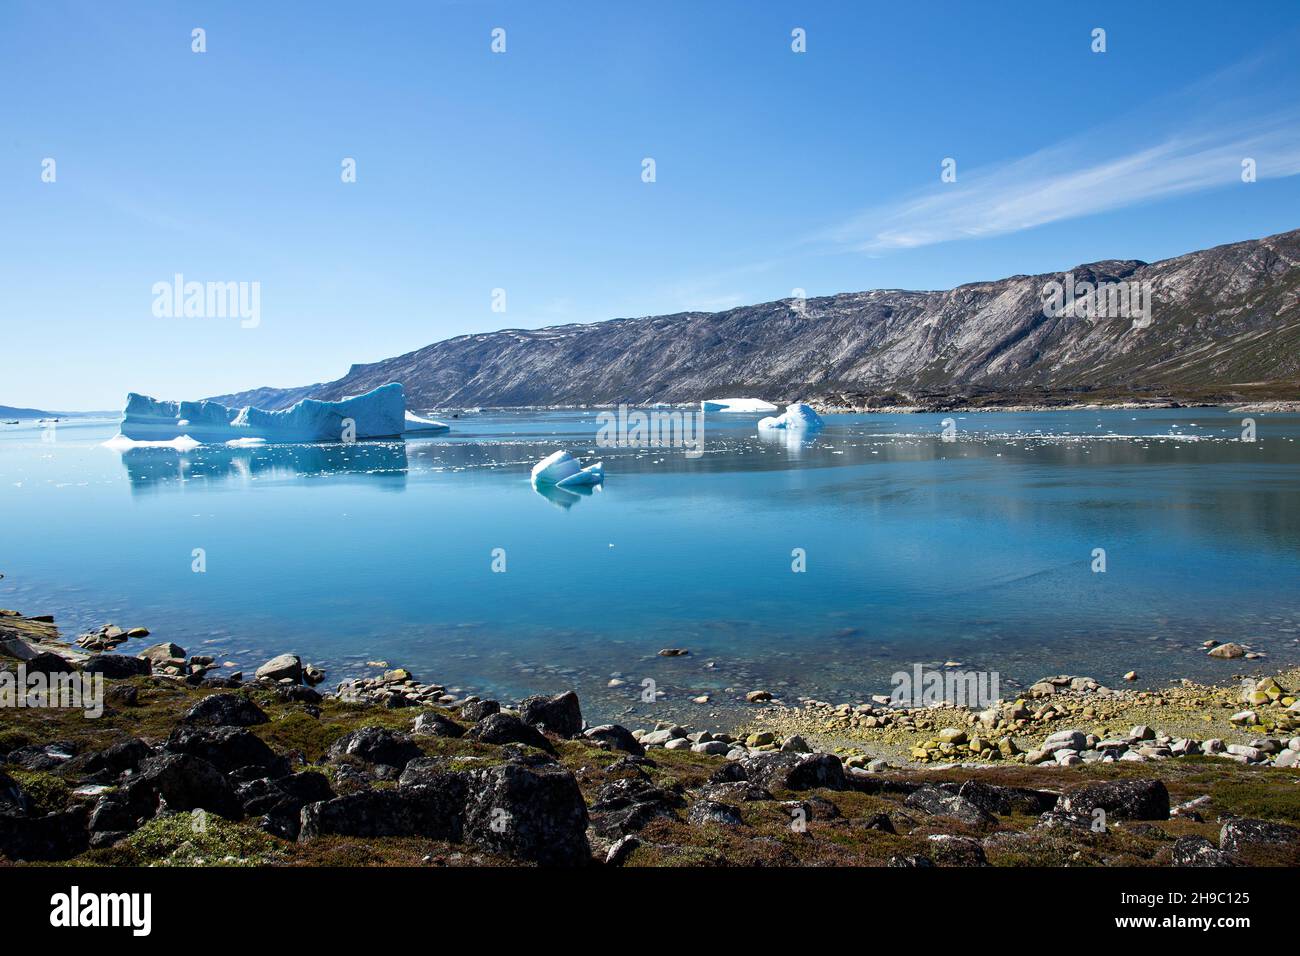 Ataa, Groenland. Camp L'Ataa camp est situé dans le nord du Groenland, à environ cinq heures de navigation à partir de Ilulissat, dans une magnifique baie, c'est l'idéal Banque D'Images